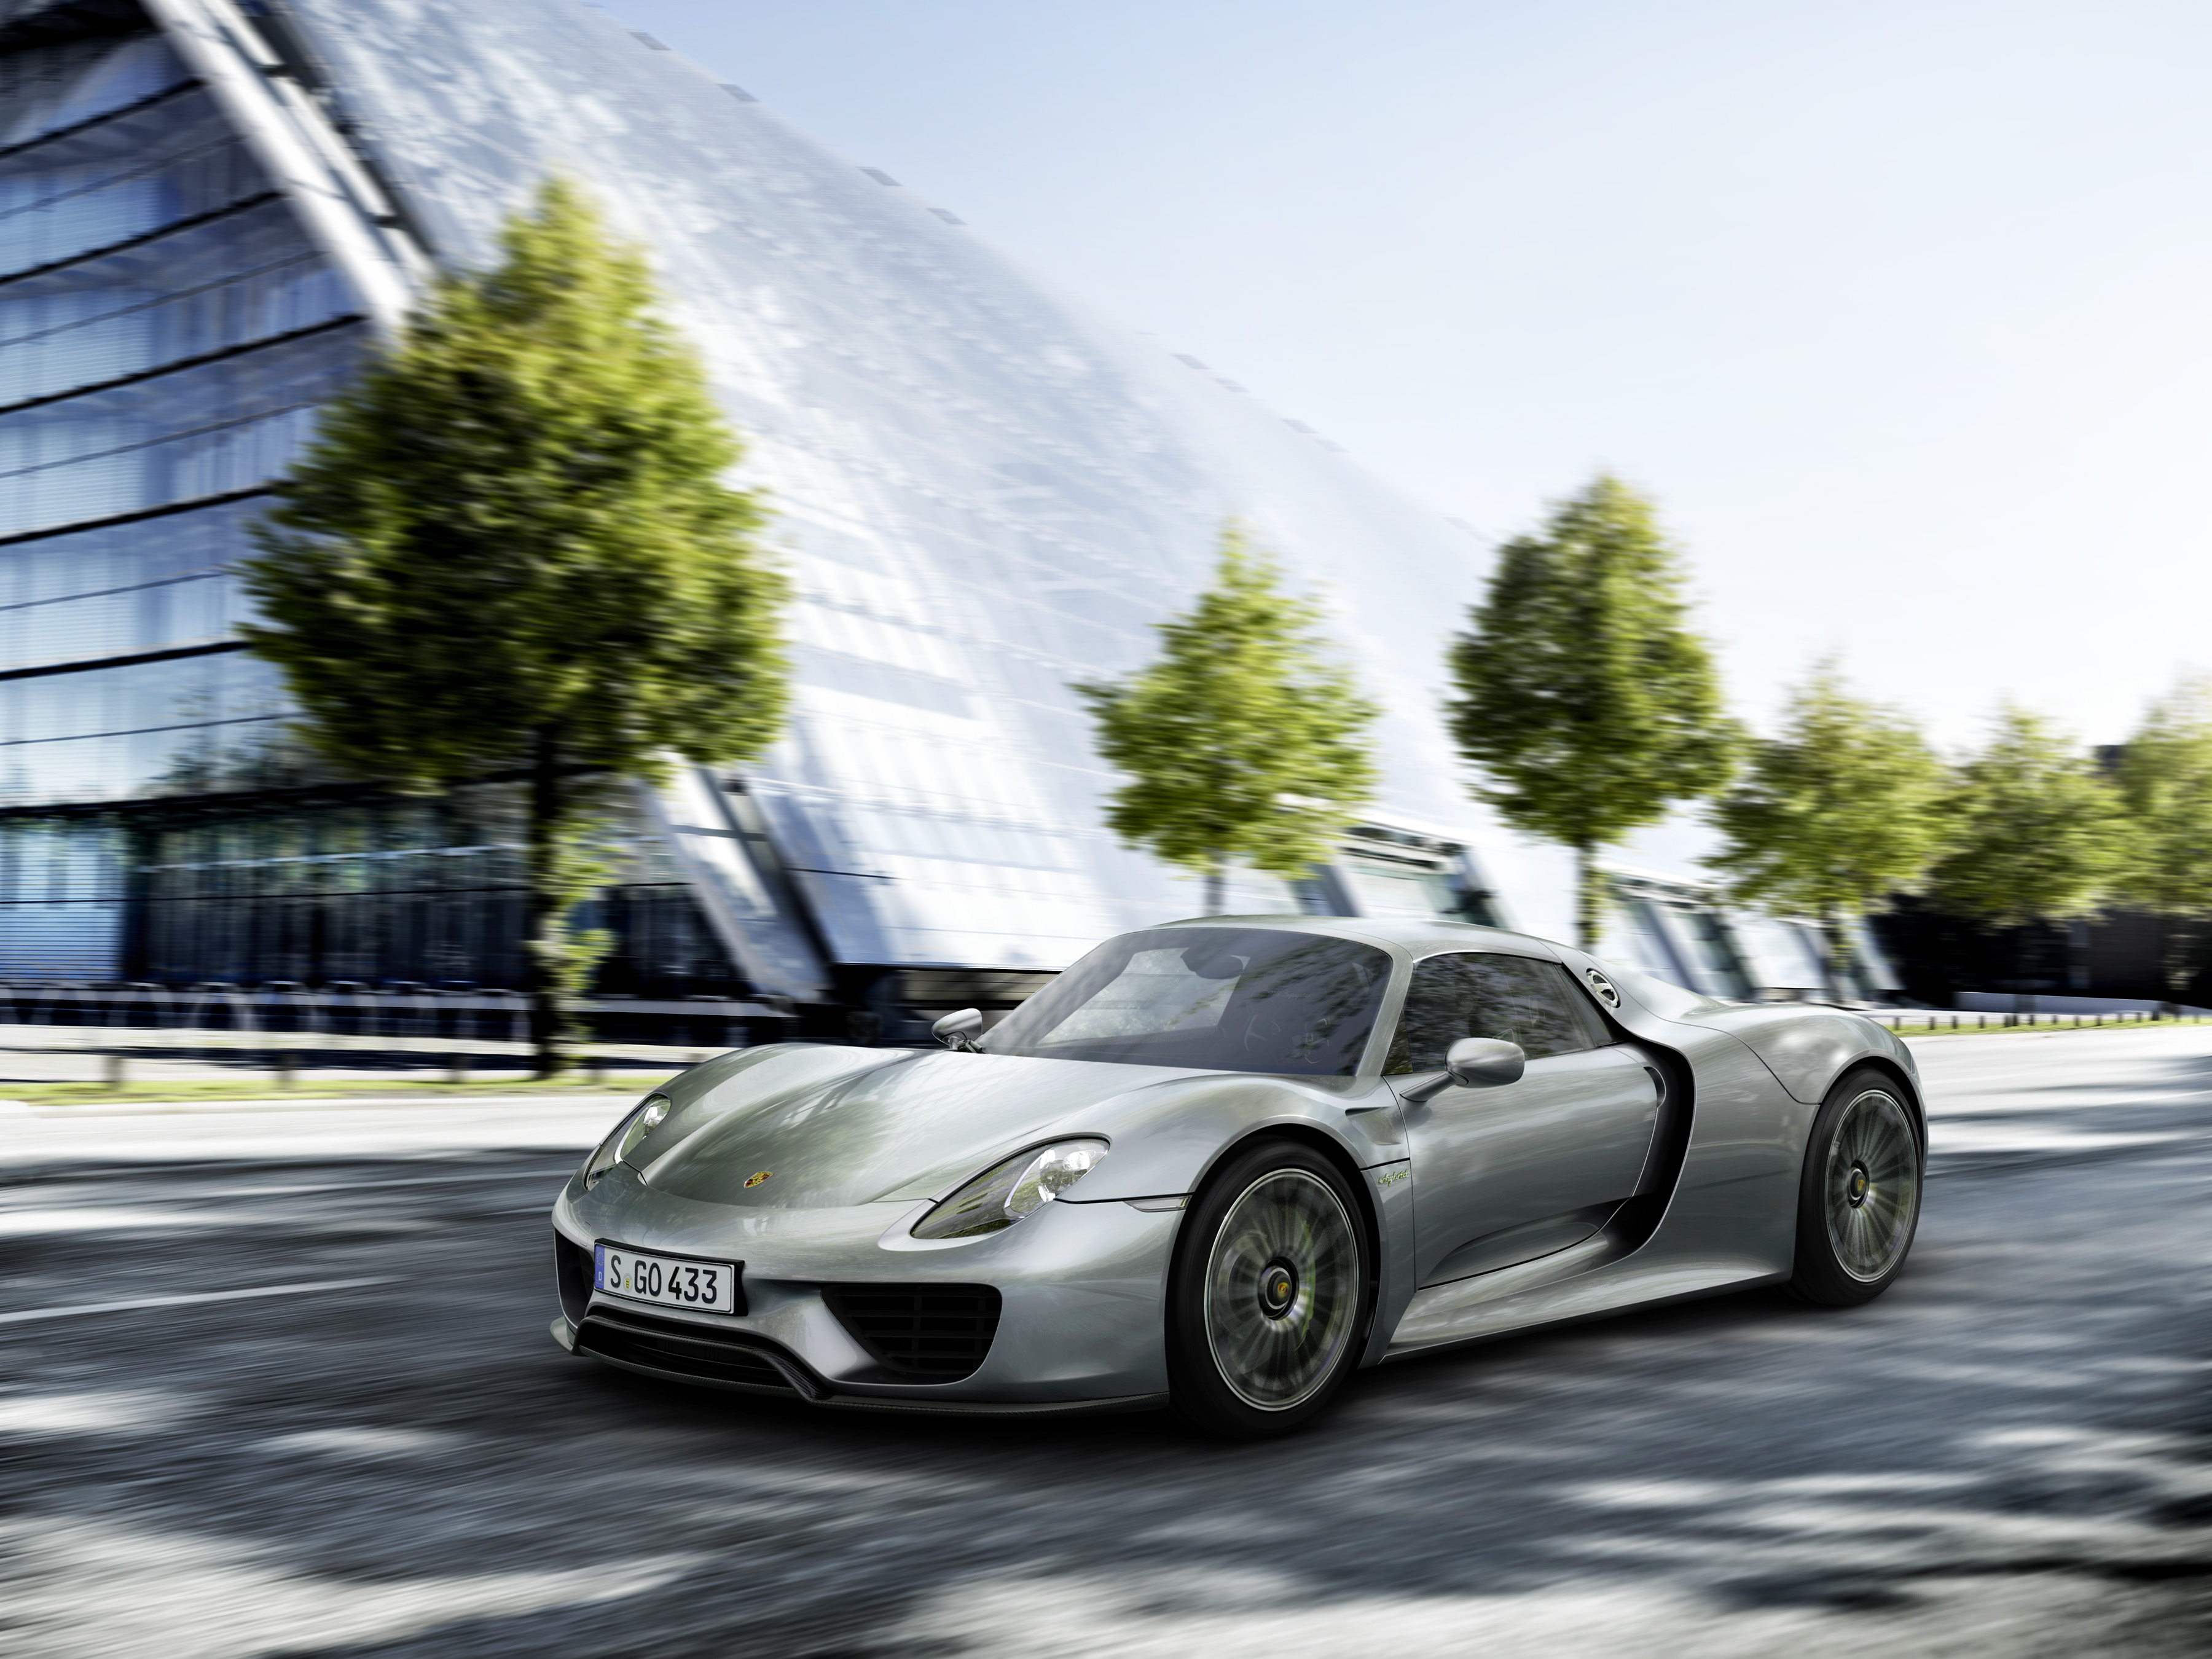 Porsche Spyder High Resolution Wallpaper Image